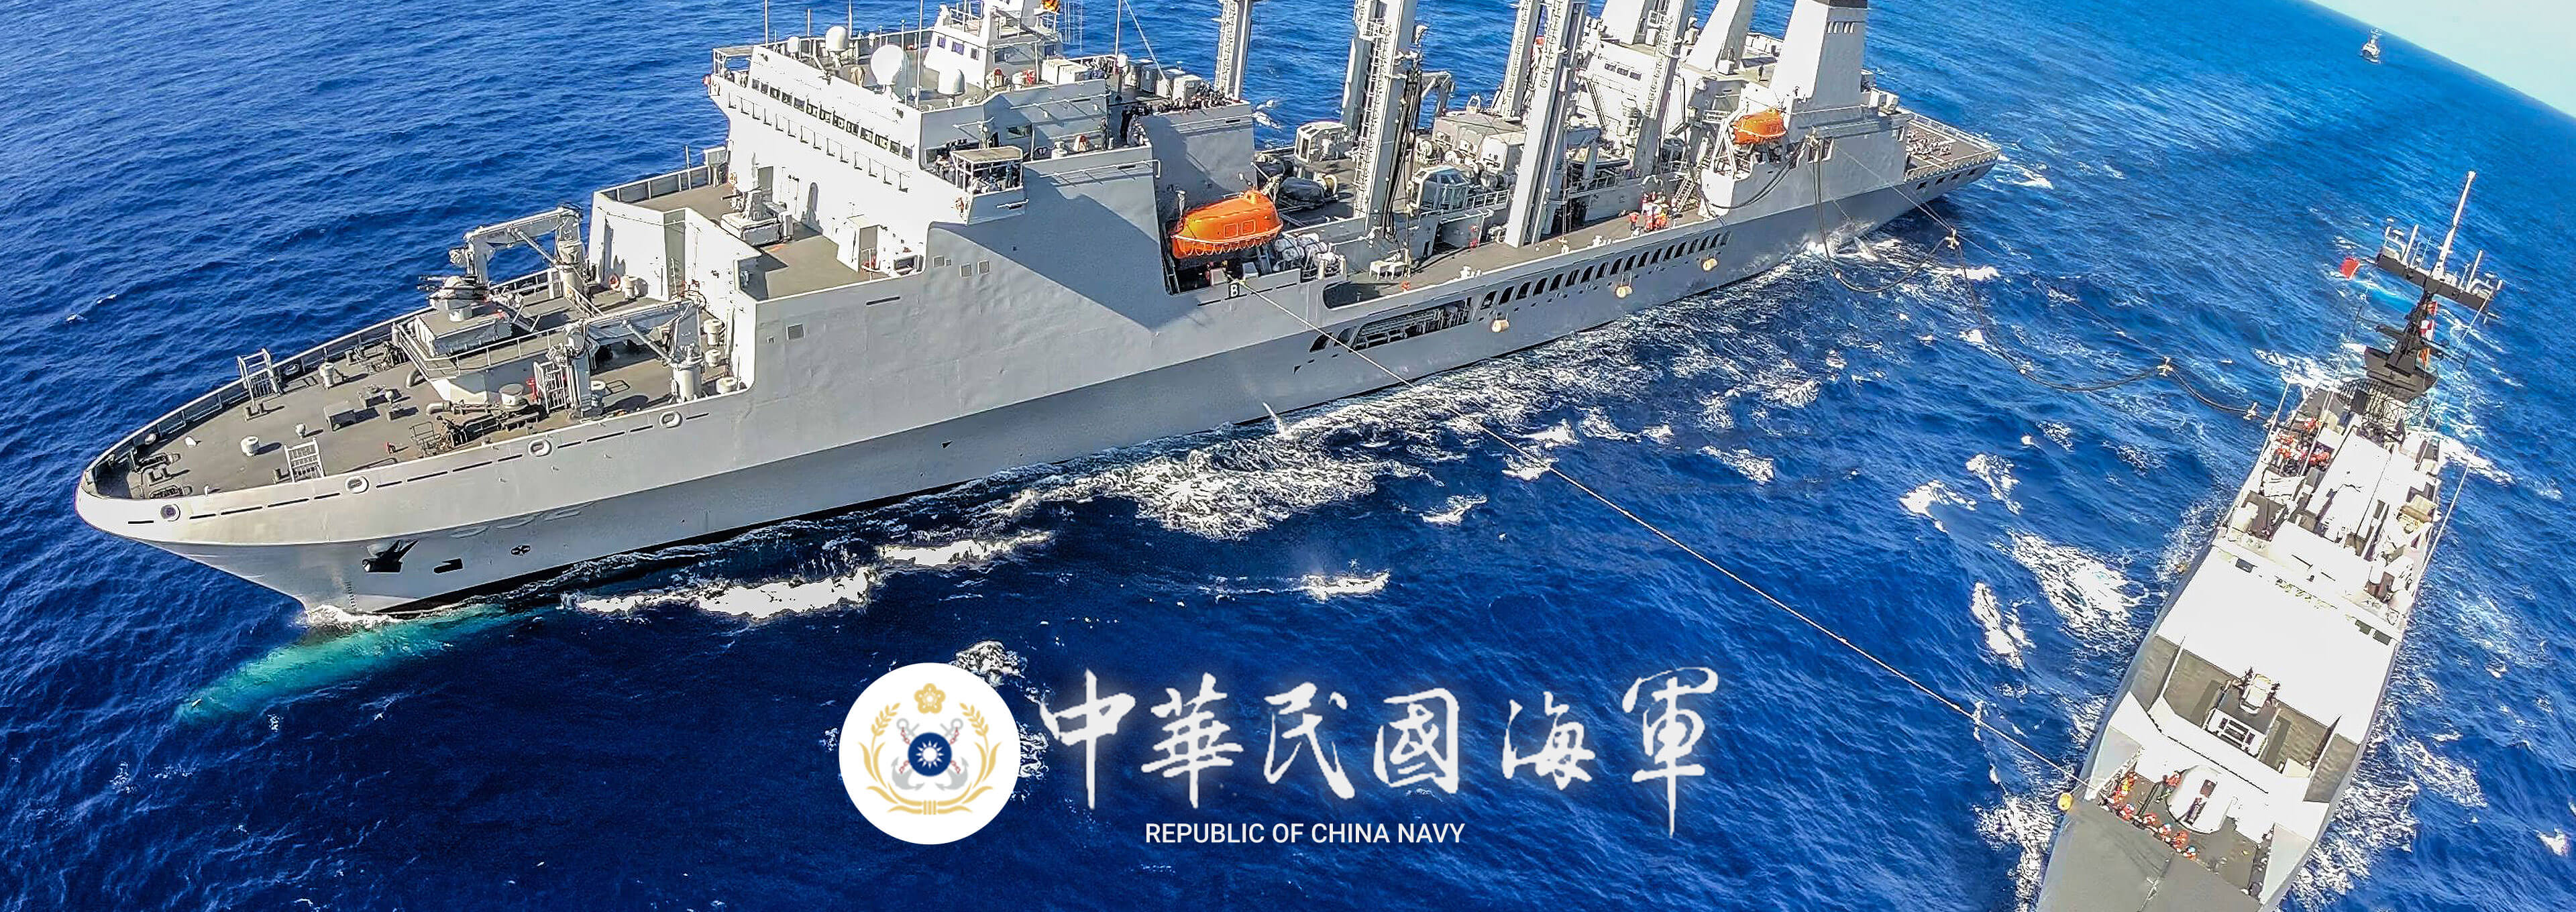 中華民國海軍船艦演習及徽章形象圖